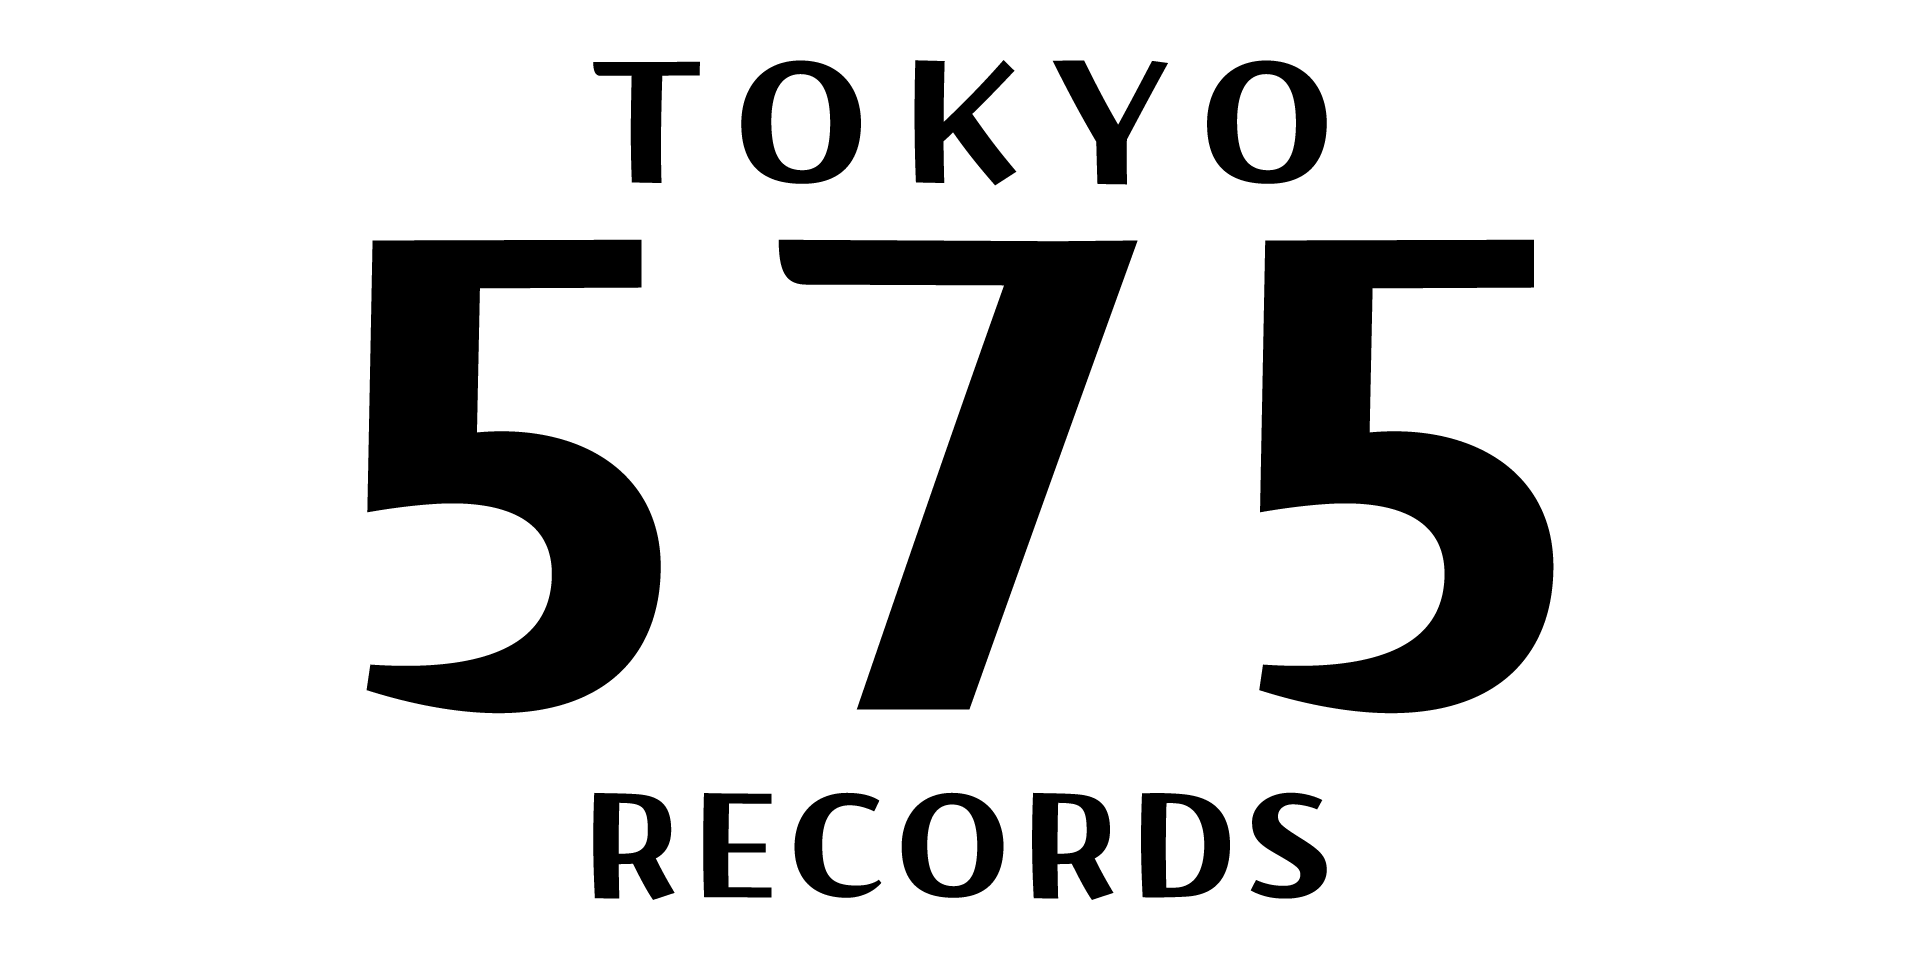 TOKYO 575 RECORDS